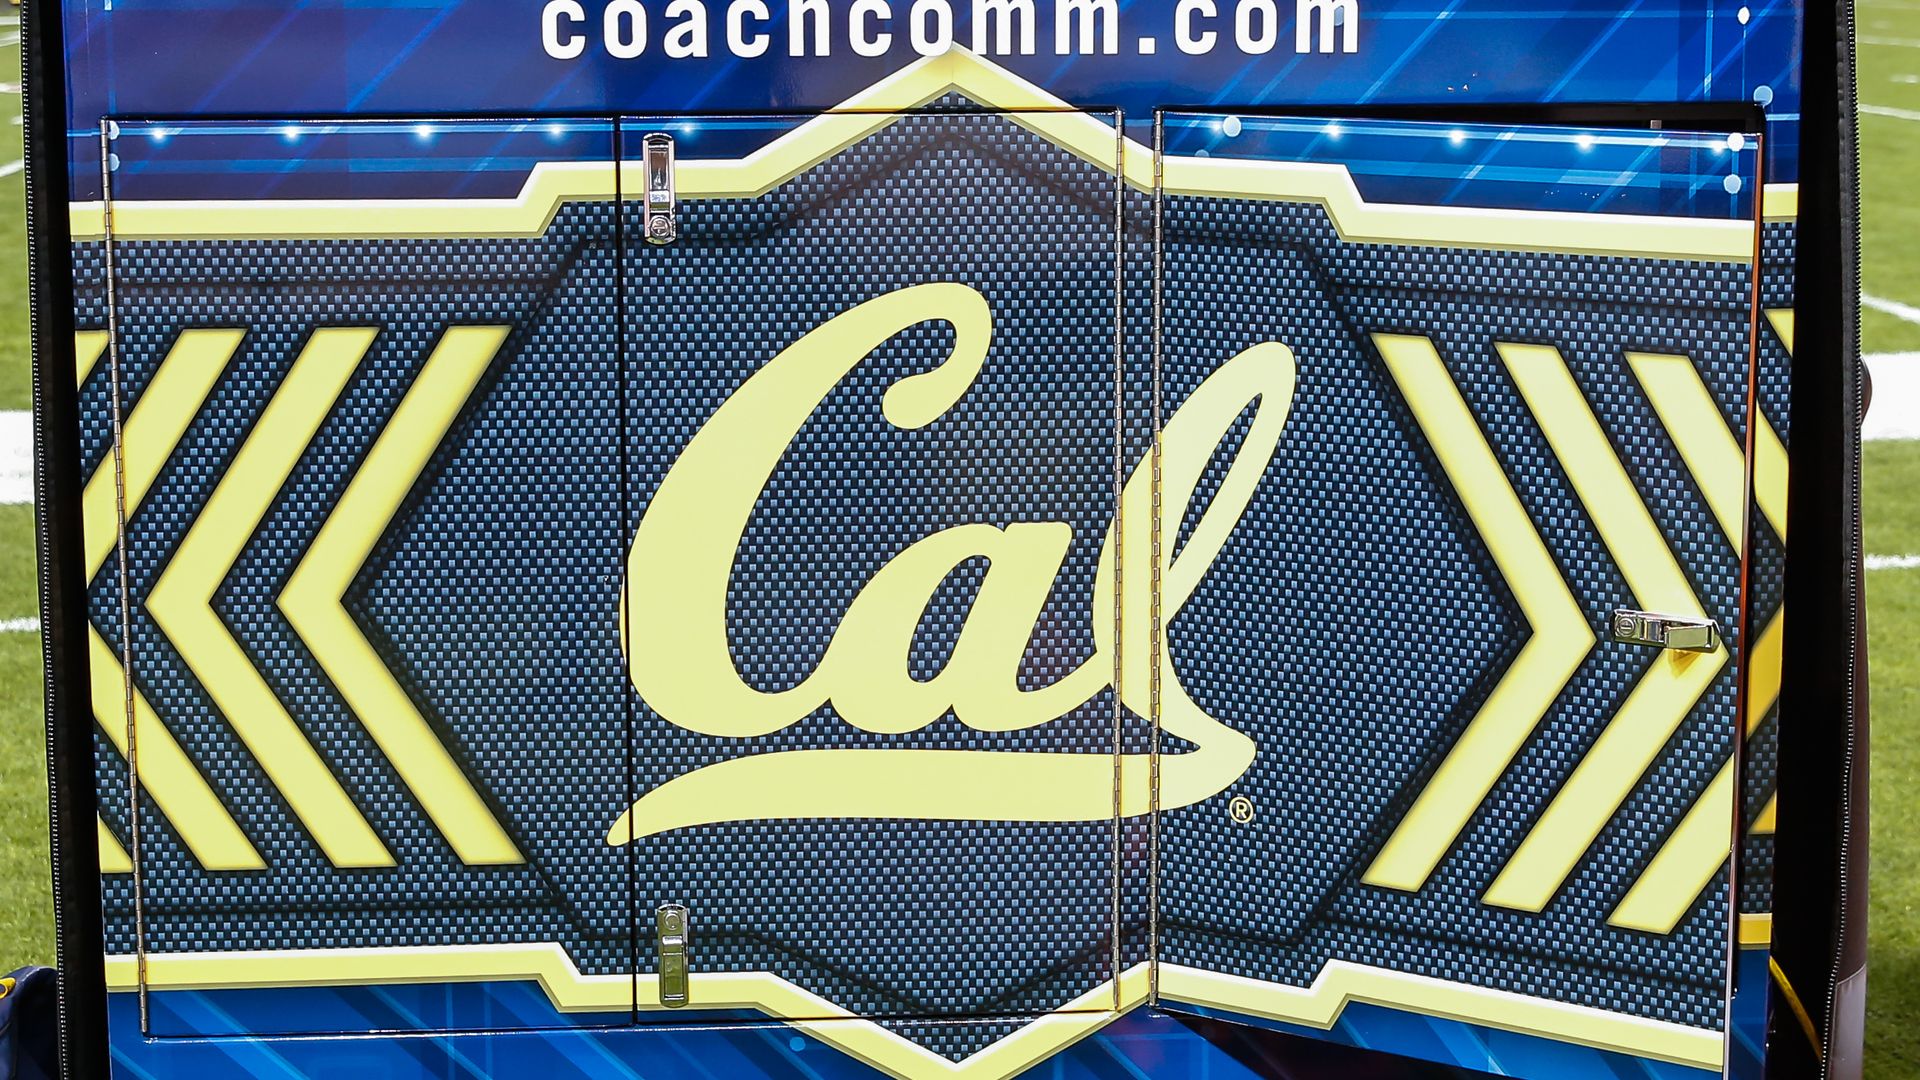 A "Cal" sign